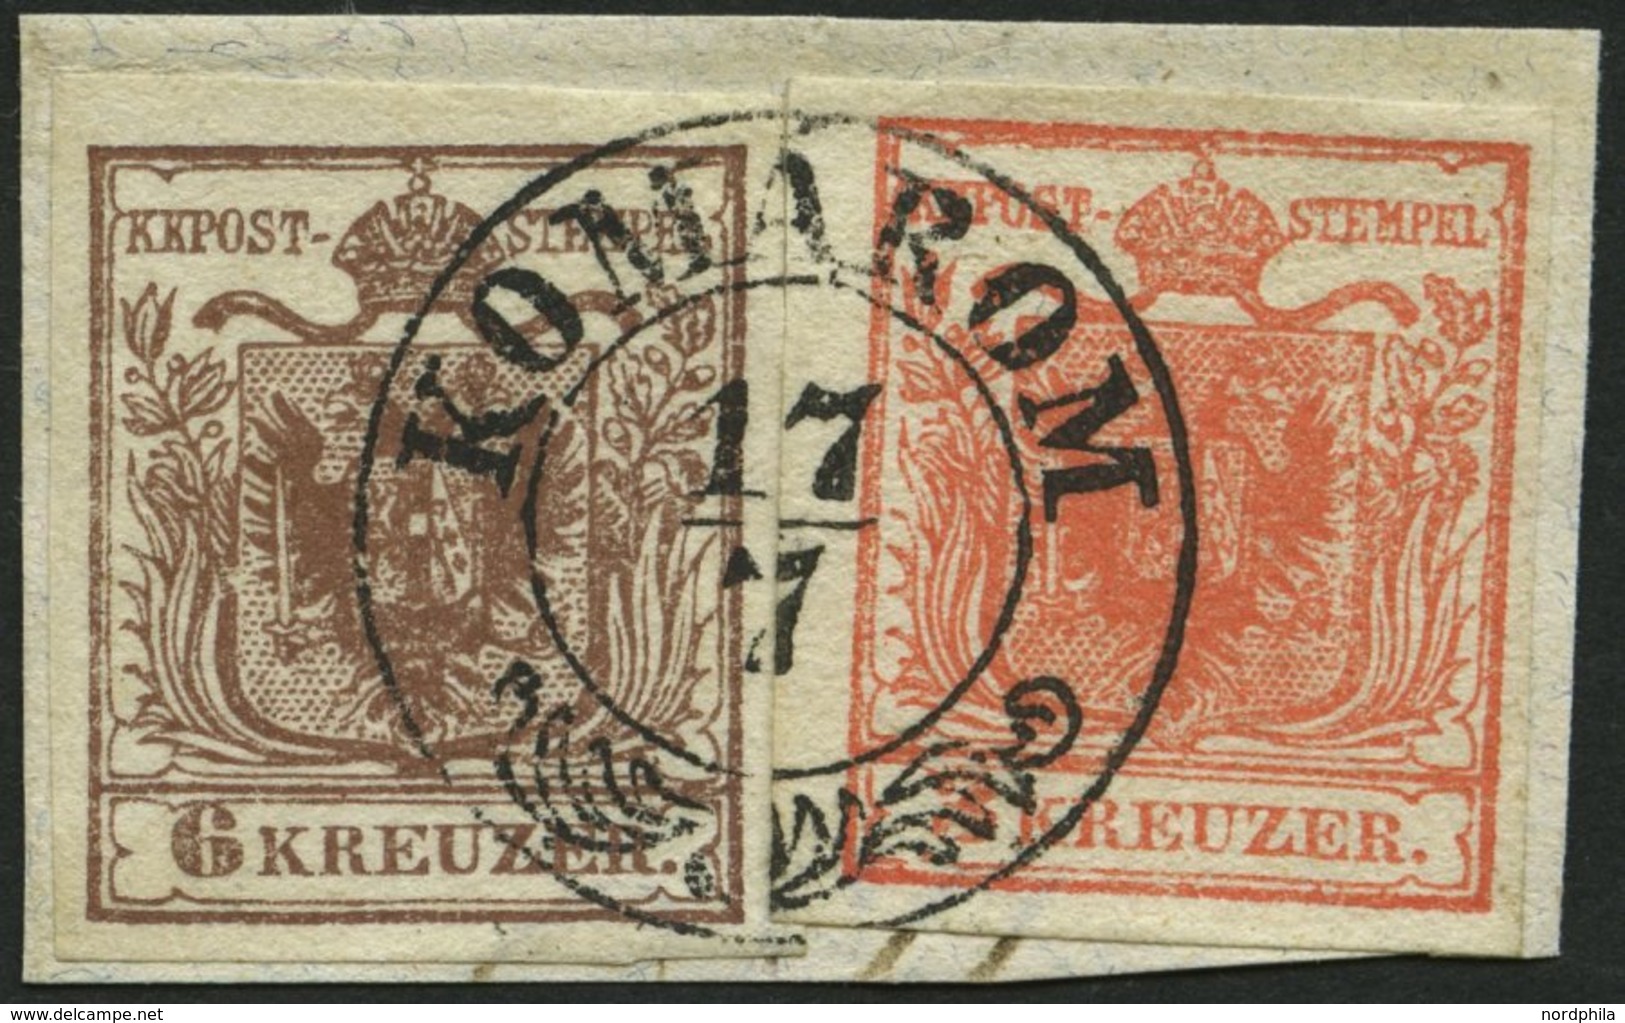 ÖSTERREICH 3/4X BrfStk, 1850, 3 Kr. Rot Und 6 Kr. Braun, Handpapier, Zentrischer Ungarn K2 KOMARON, Kabinettbriefstück - Usati